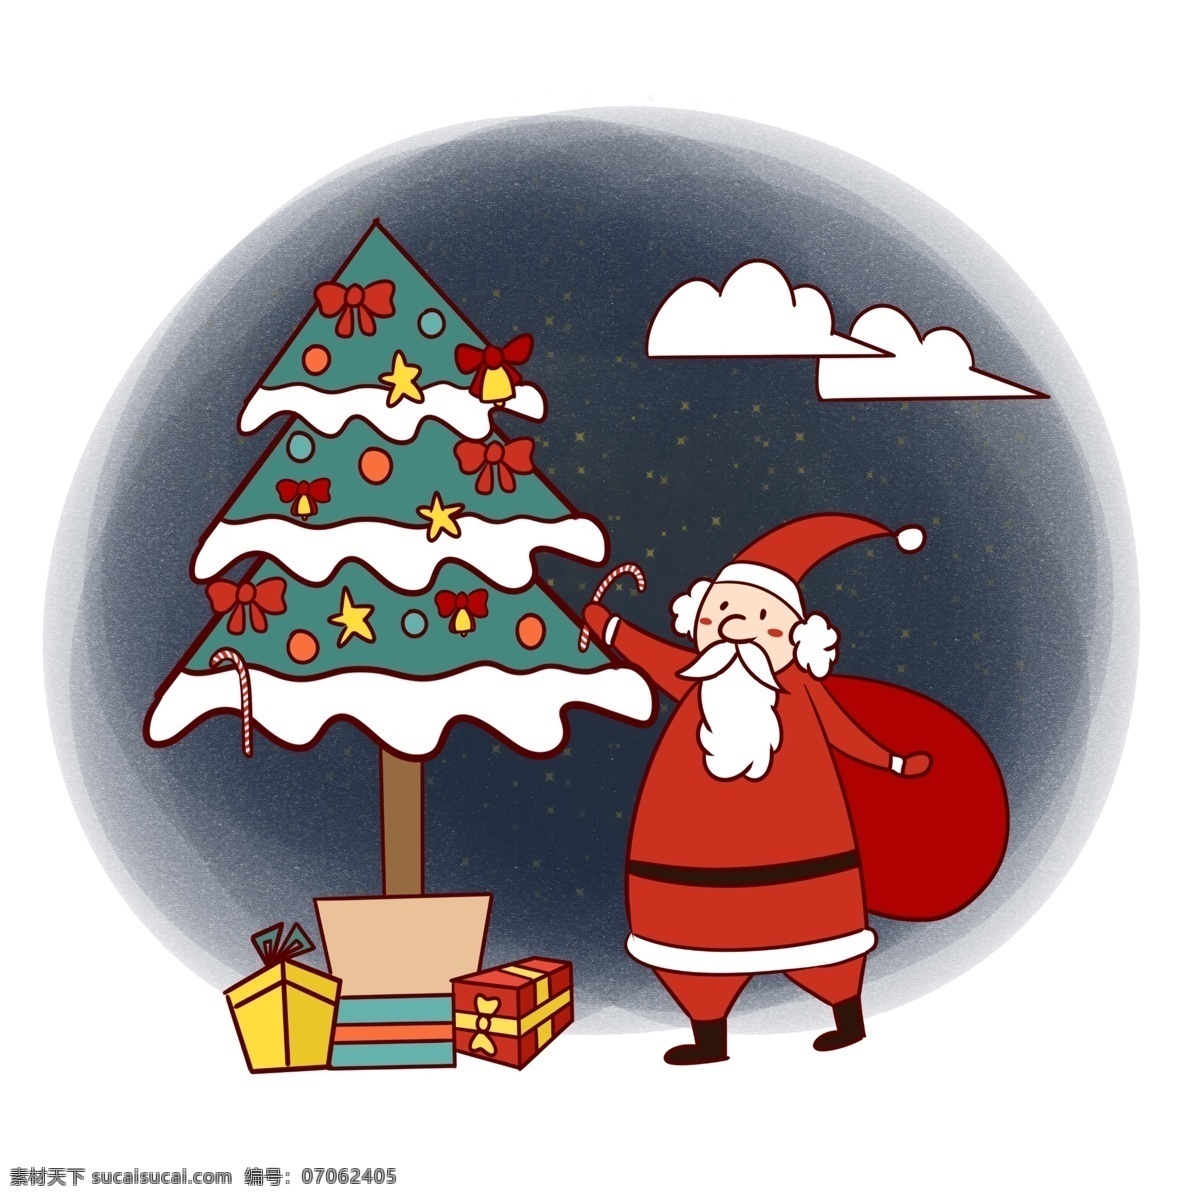 手绘 卡通 可爱 圣诞节 圣诞老人 矢量 免抠 圣诞快乐 礼物 圣诞树 铃铛 夜晚 圣诞夜